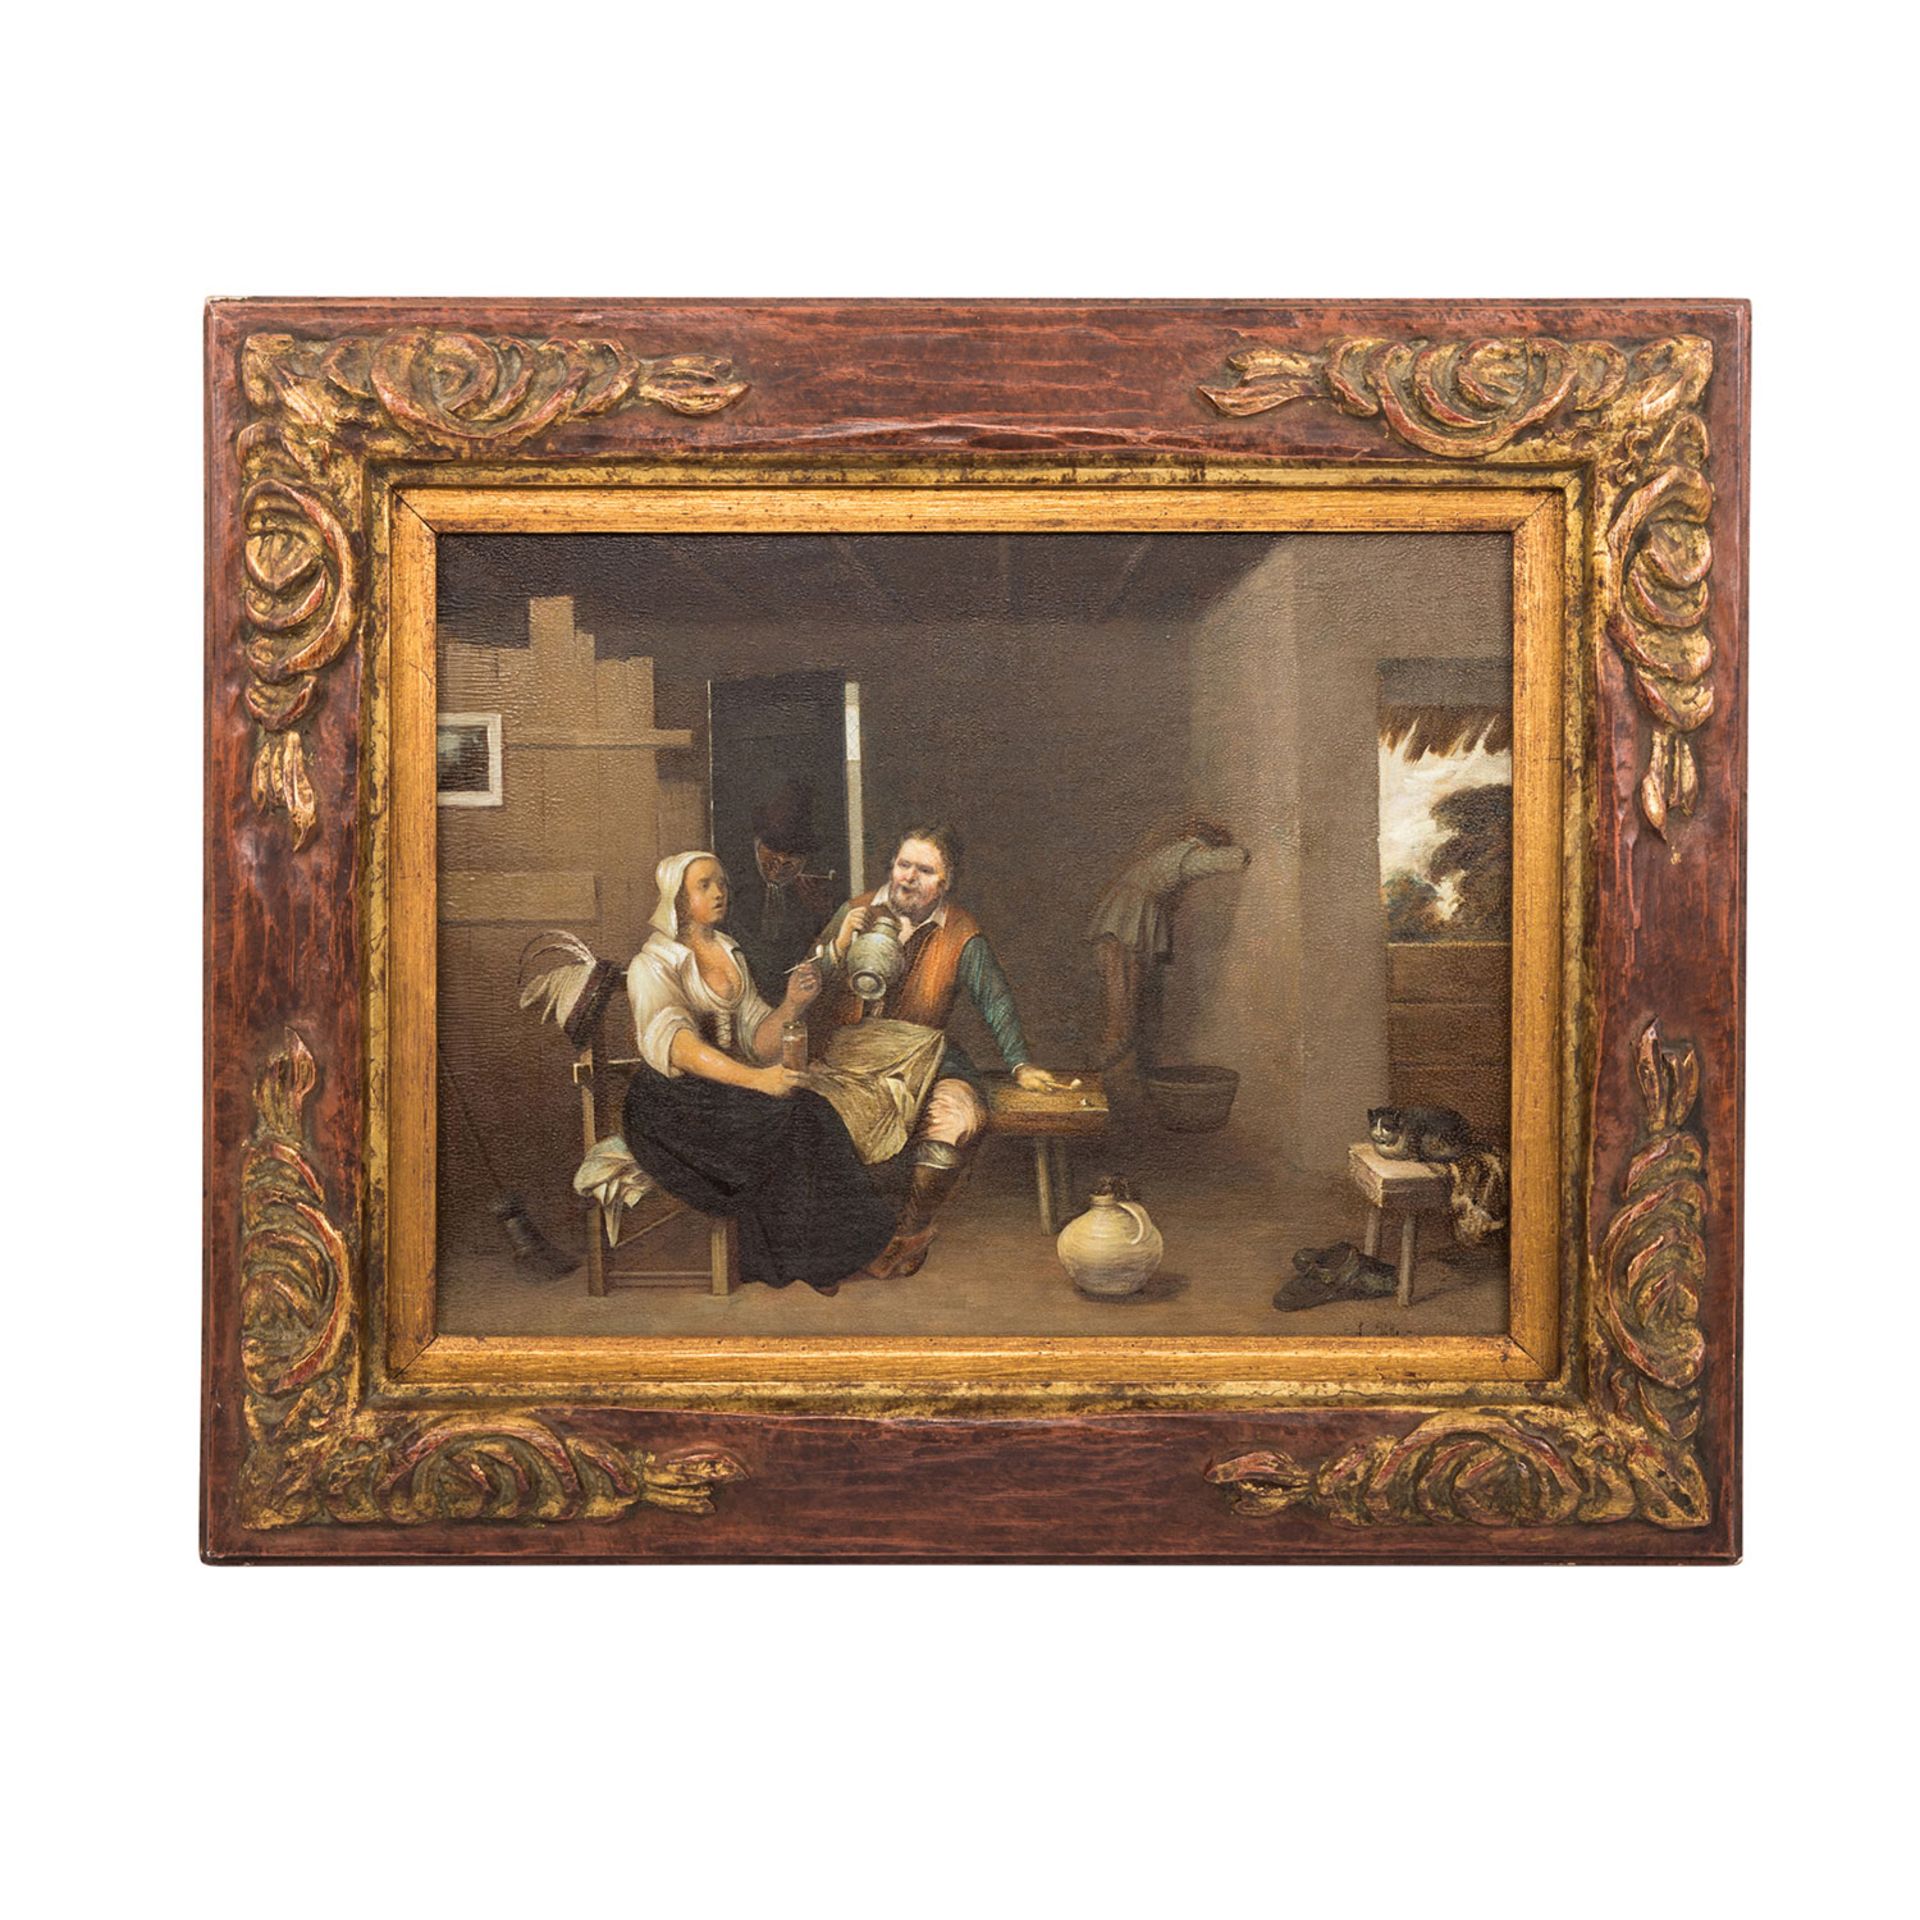 POTTER, L. (Maler 19./20. Jh.), "In der Wirtsstube", beim Trinkgelage, u.re. sign., Öl auf Holz, ca. - Bild 2 aus 4